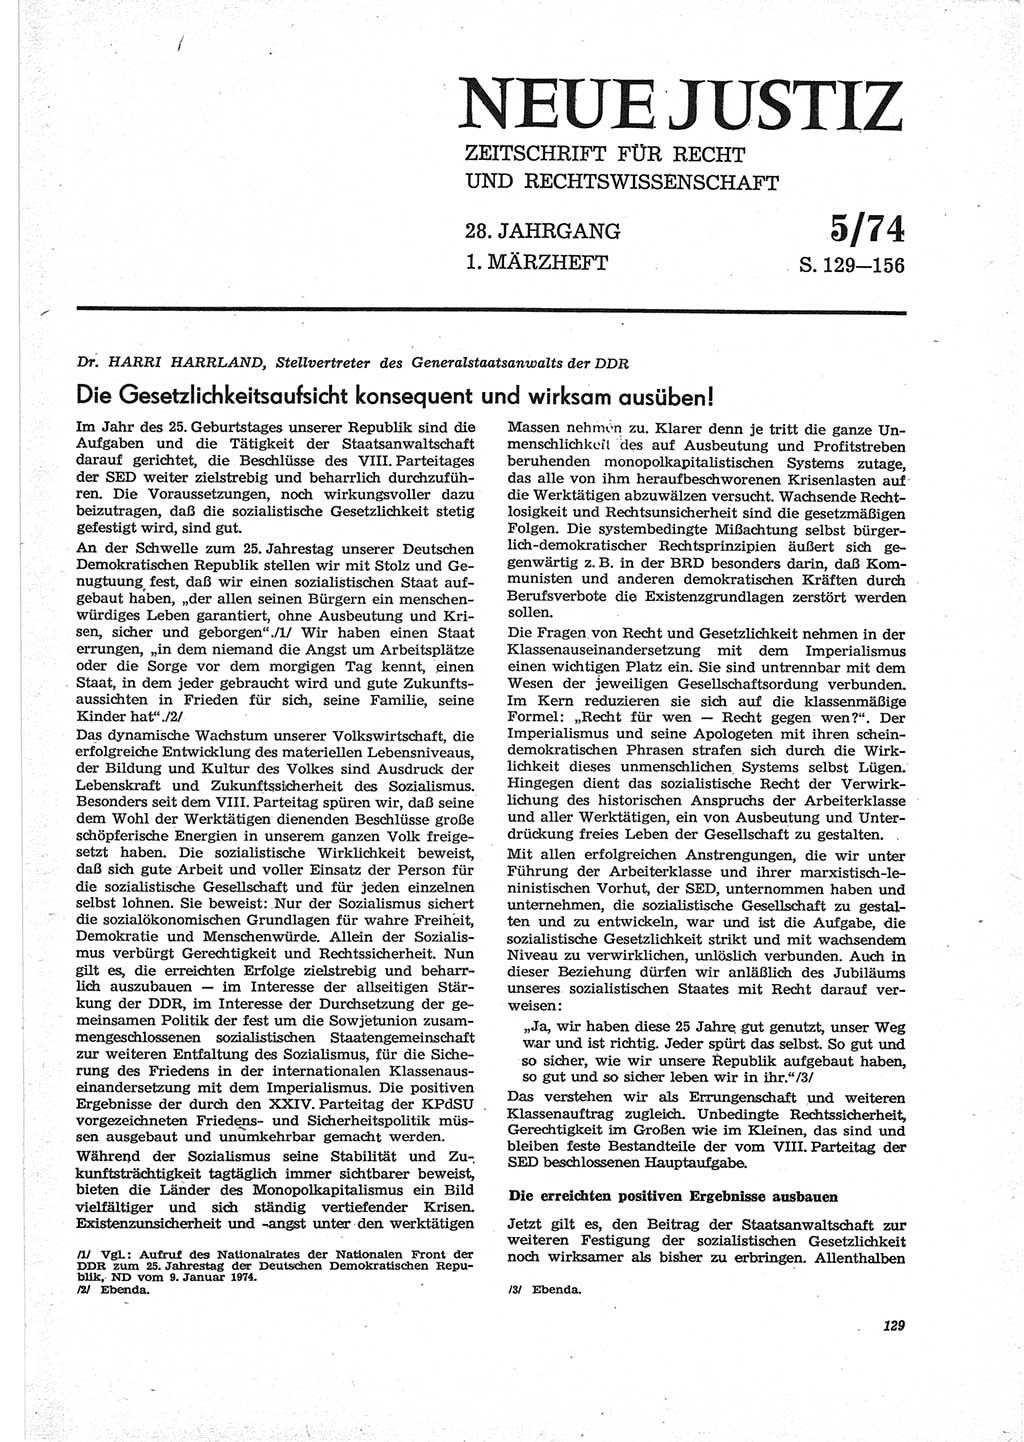 Neue Justiz (NJ), Zeitschrift für Recht und Rechtswissenschaft [Deutsche Demokratische Republik (DDR)], 28. Jahrgang 1974, Seite 129 (NJ DDR 1974, S. 129)